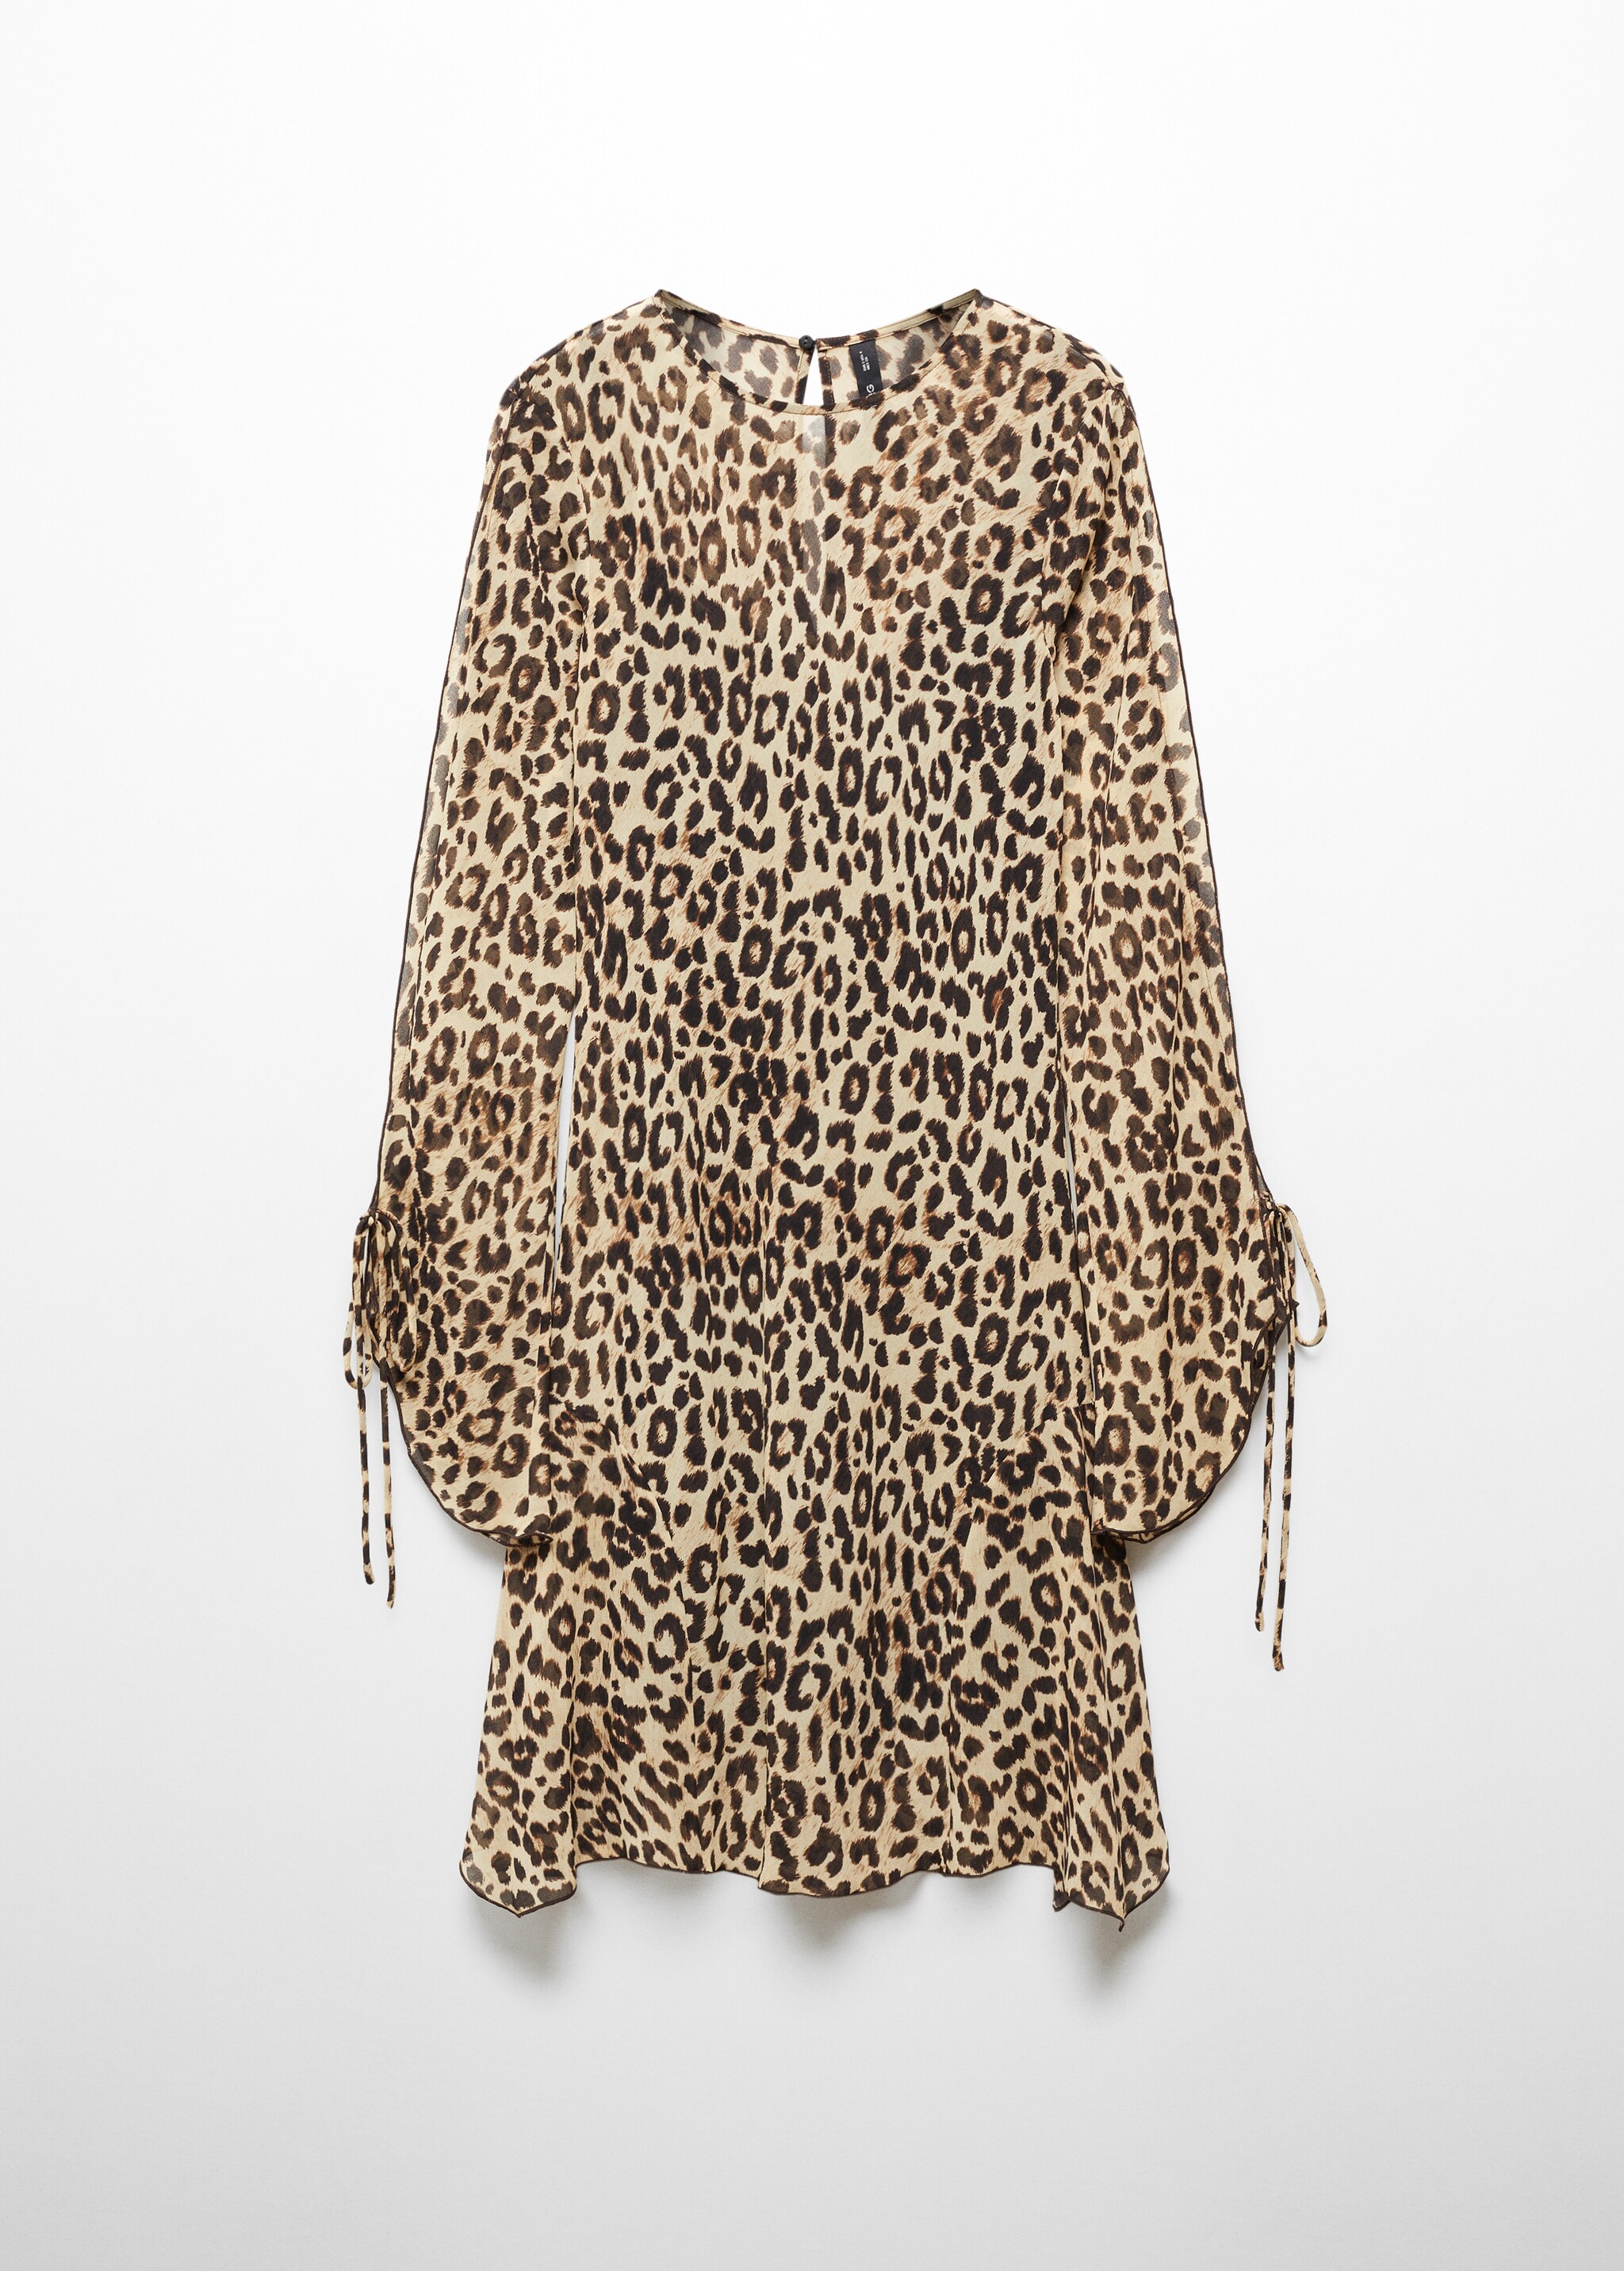 Vestido leopardo manga acampanada - Artículo sin modelo